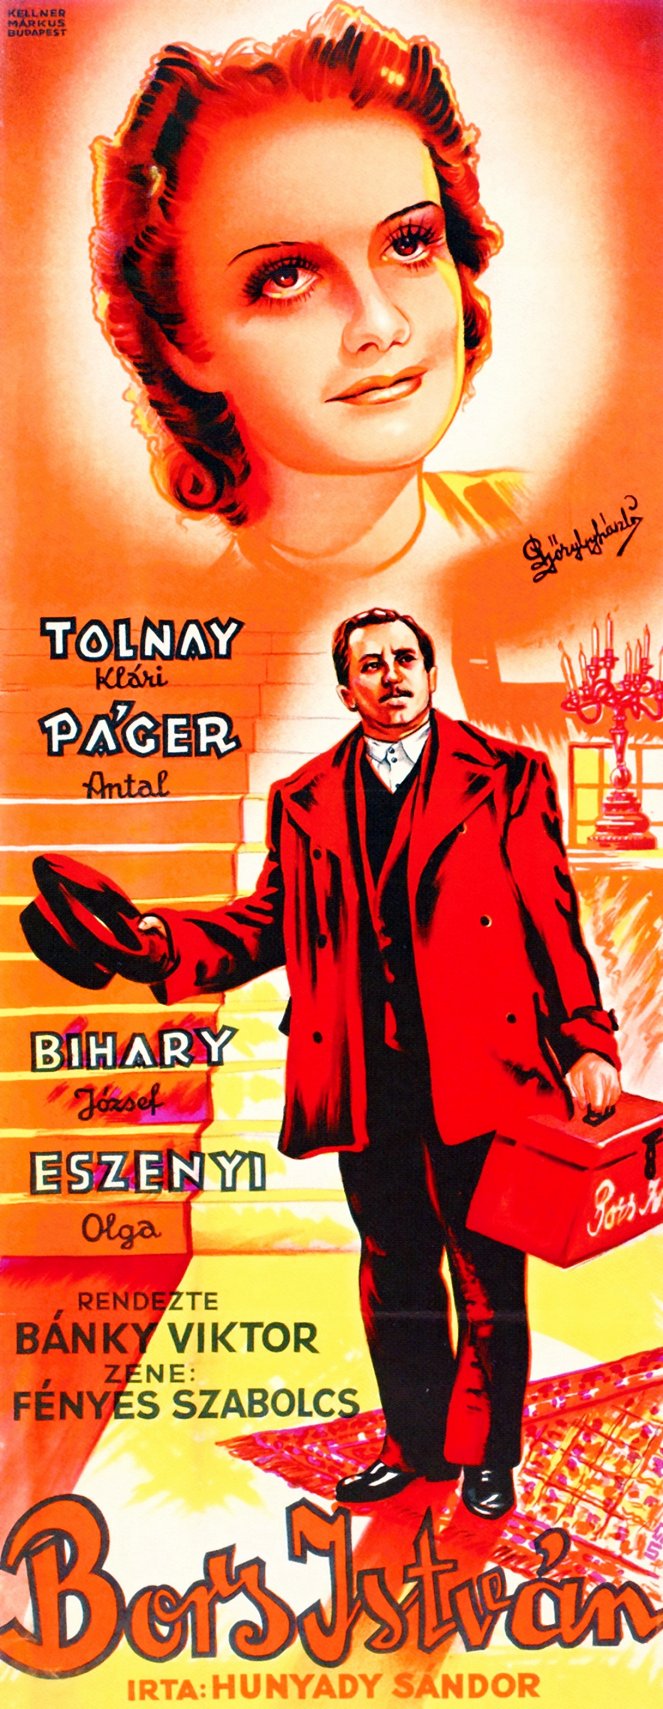 Bors István - Posters